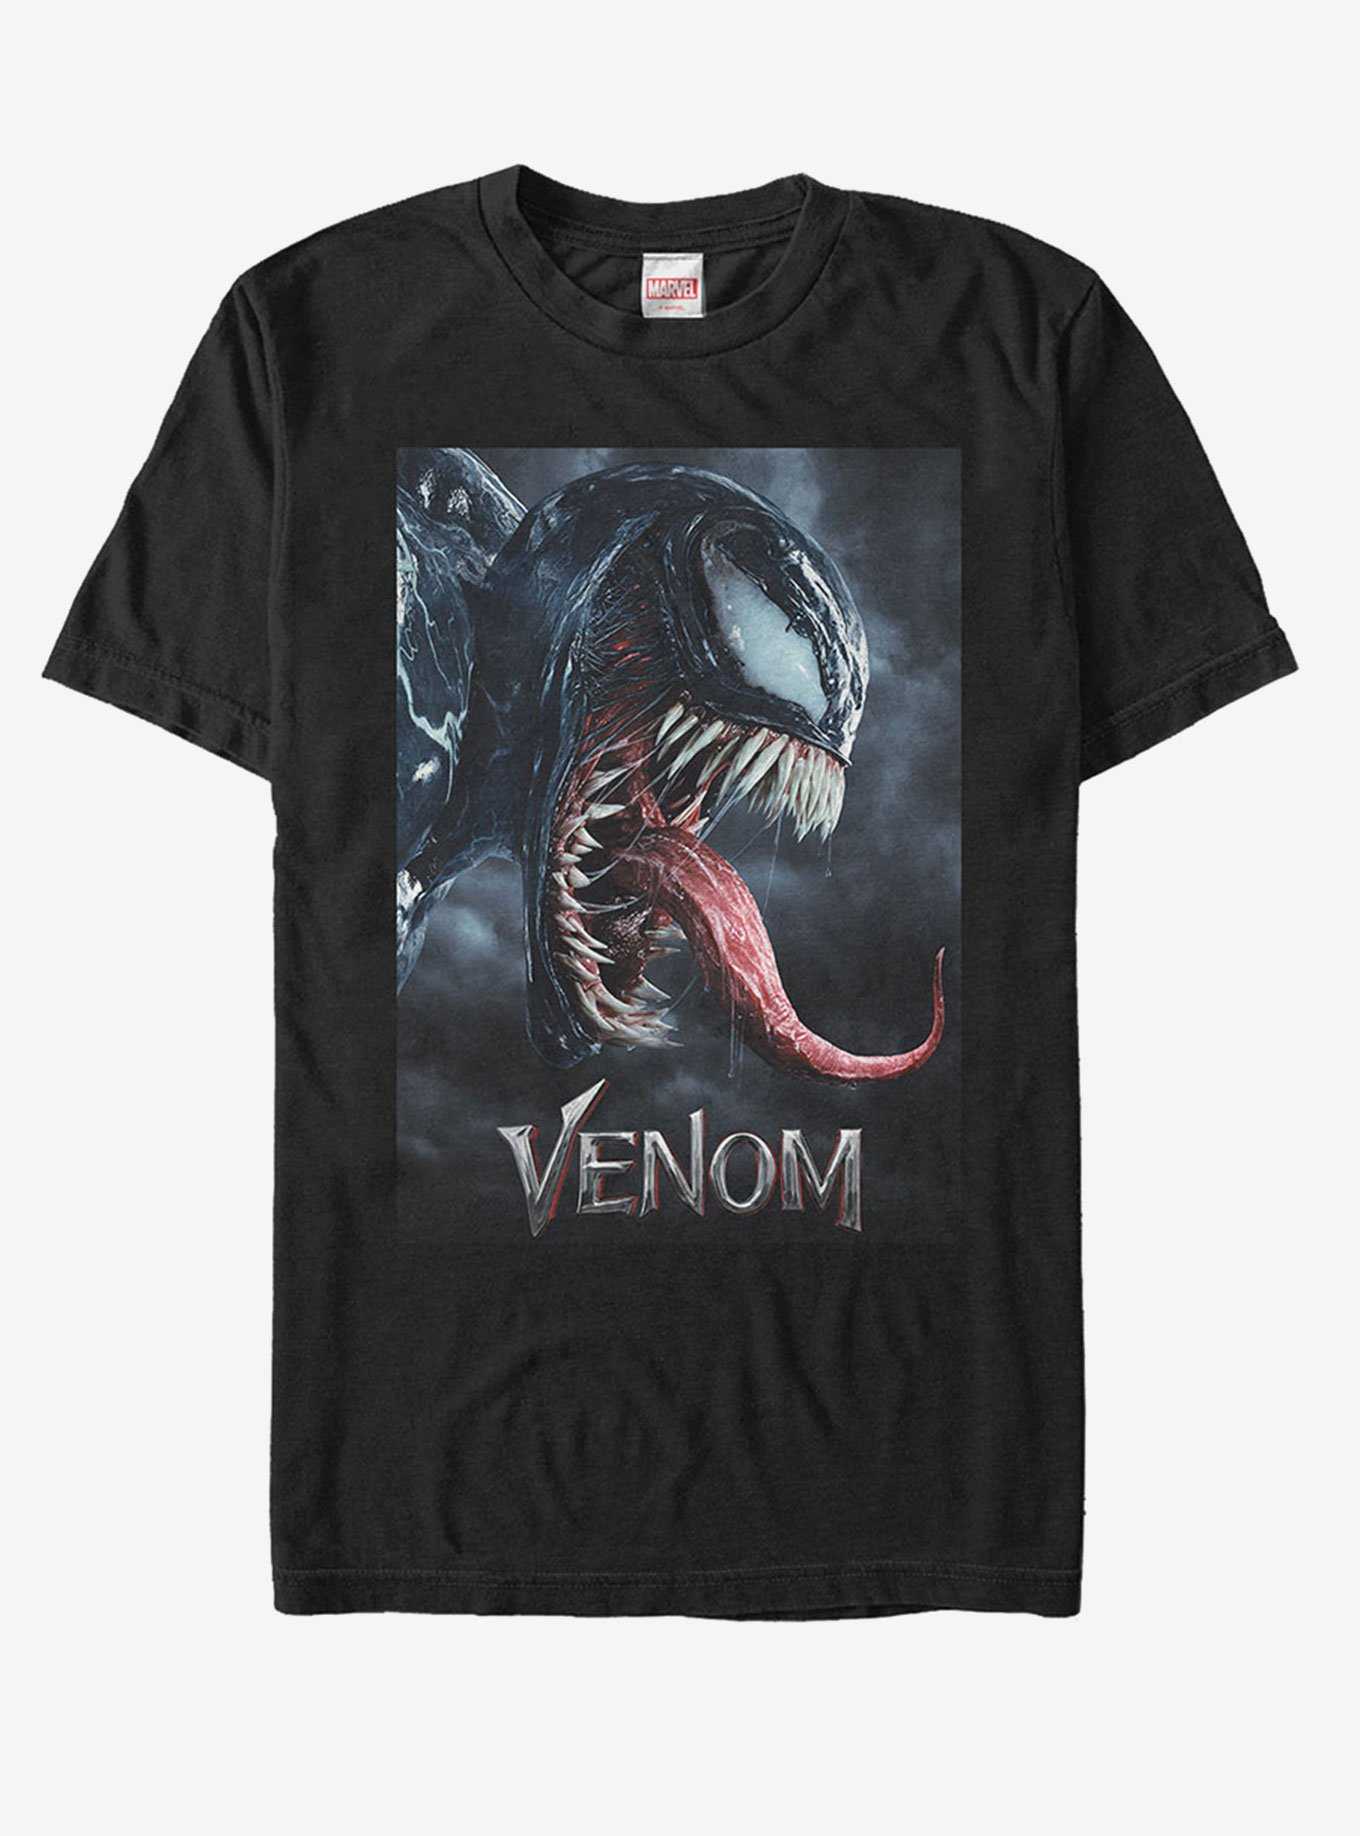 Marvel Venom Film Tongue Portrait T-Shirt, , hi-res